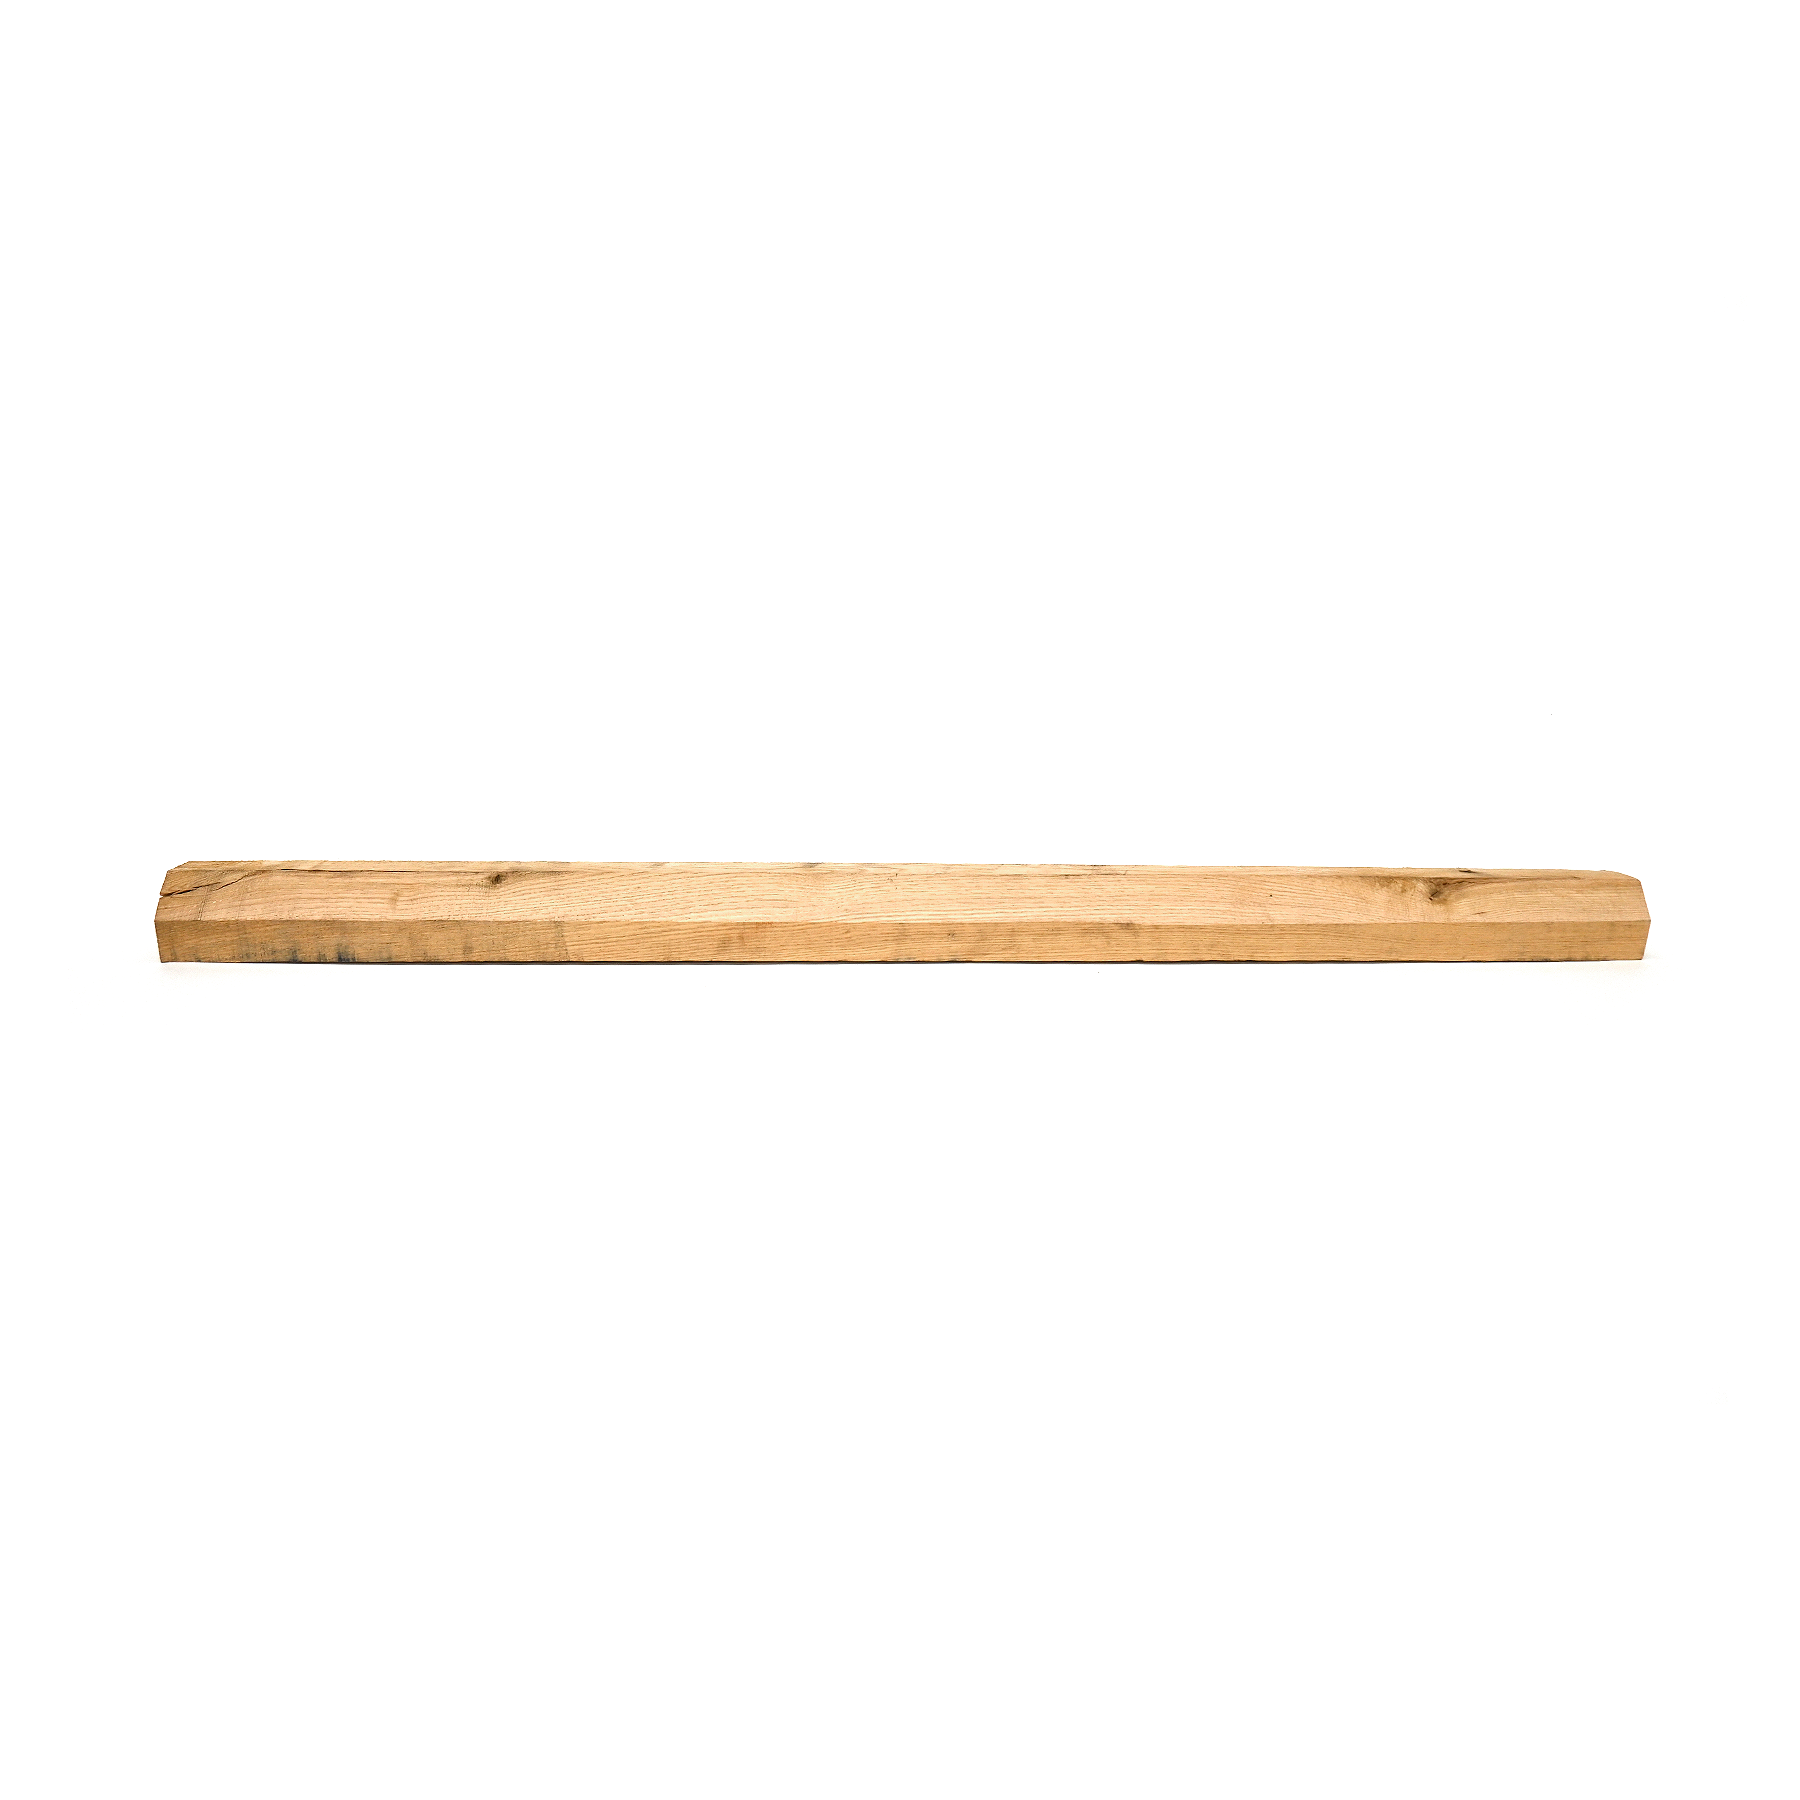 Beveled Coil Lumber 6'